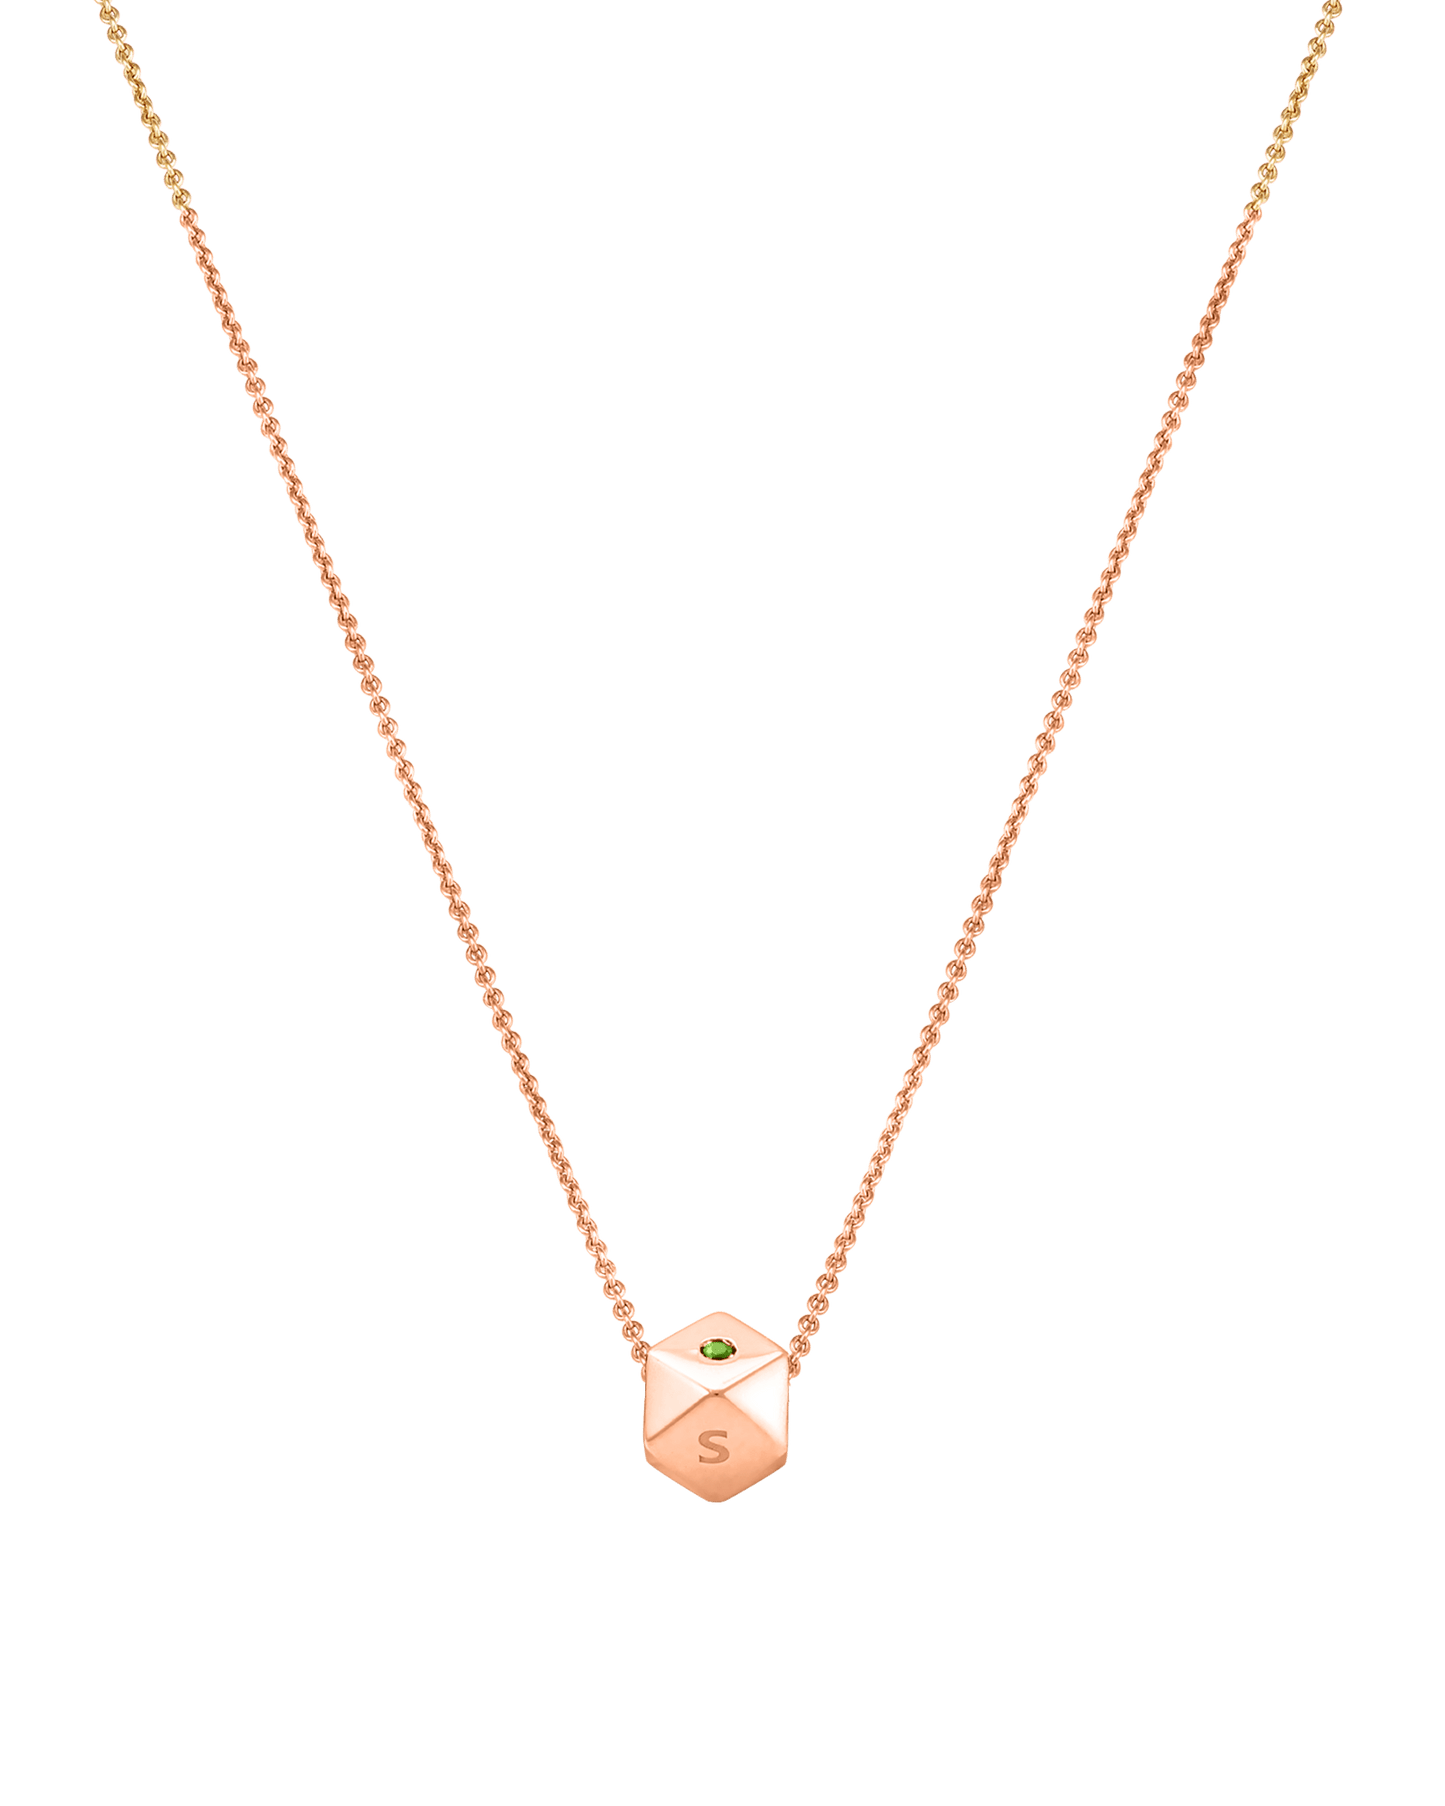 Hedra Birthstones Necklace - 14K Rose Gold Necklaces magal-dev 1 Charm 16”+2” extender 